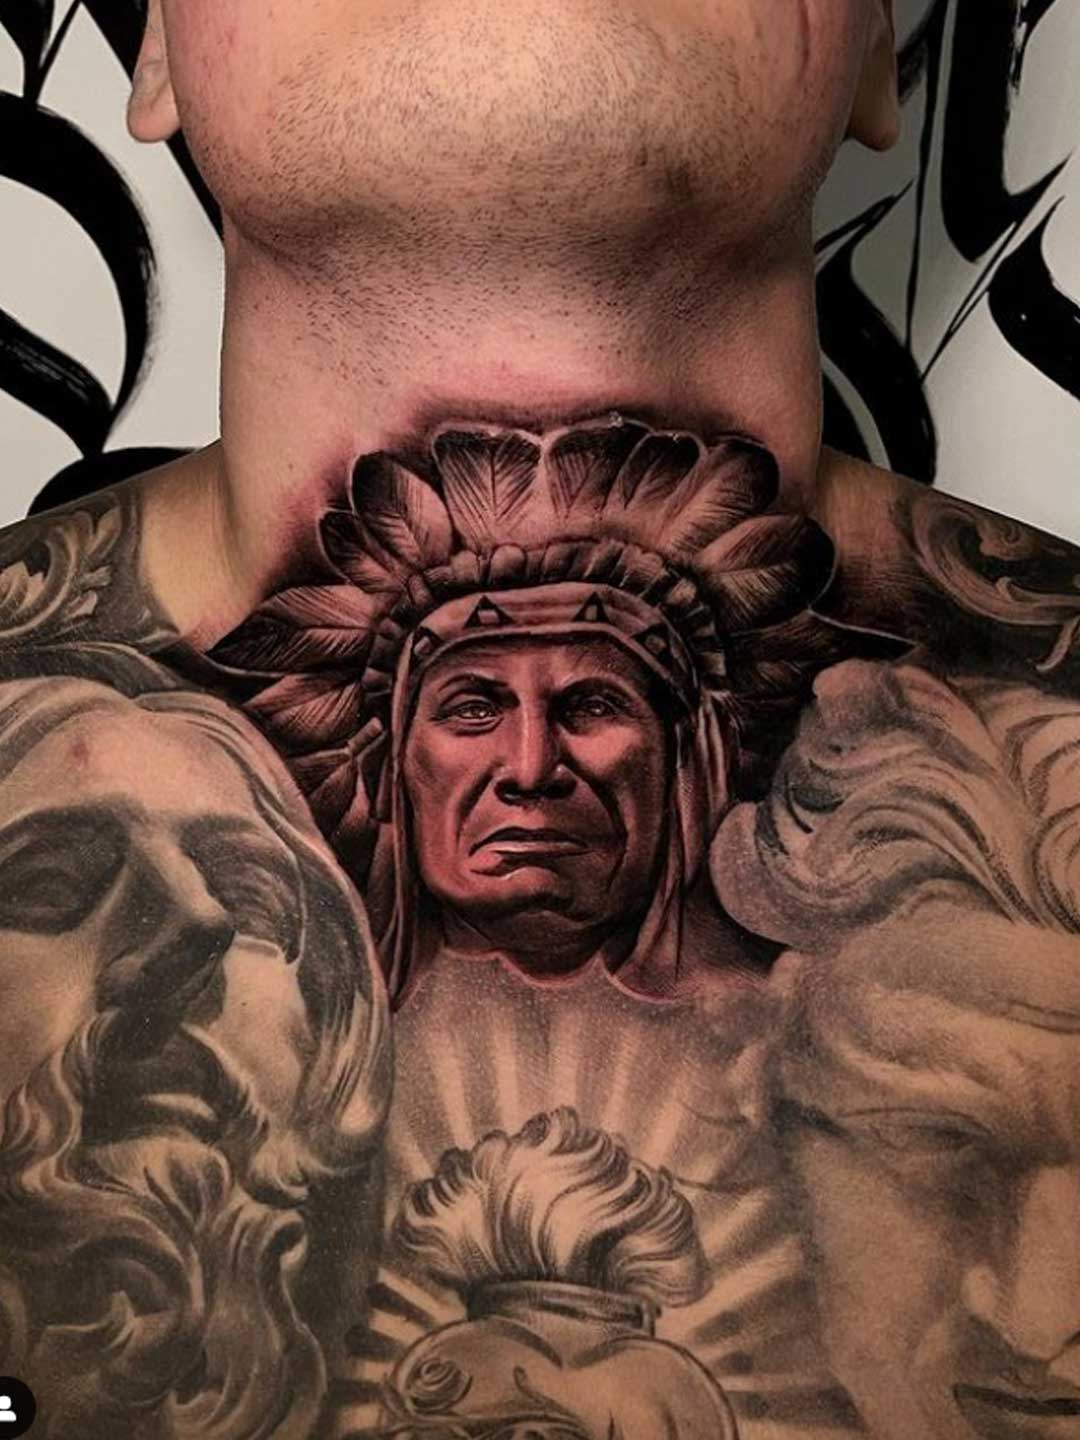 Maui tattoo artist Dre8